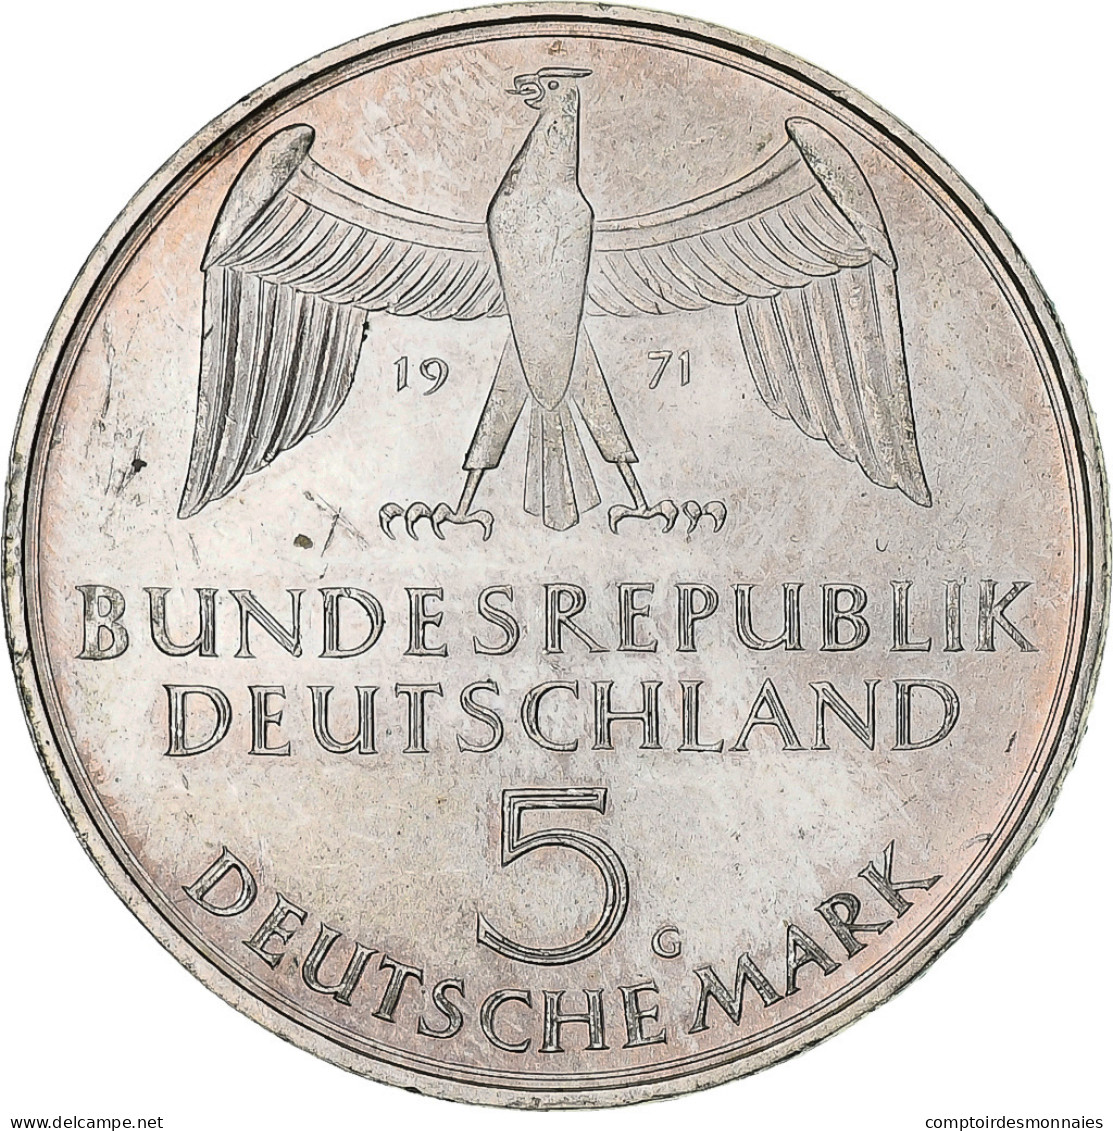 République Fédérale Allemande, 5 Mark, 1971, Karlsruhe, SUP, KM:128.1 - 5 Mark